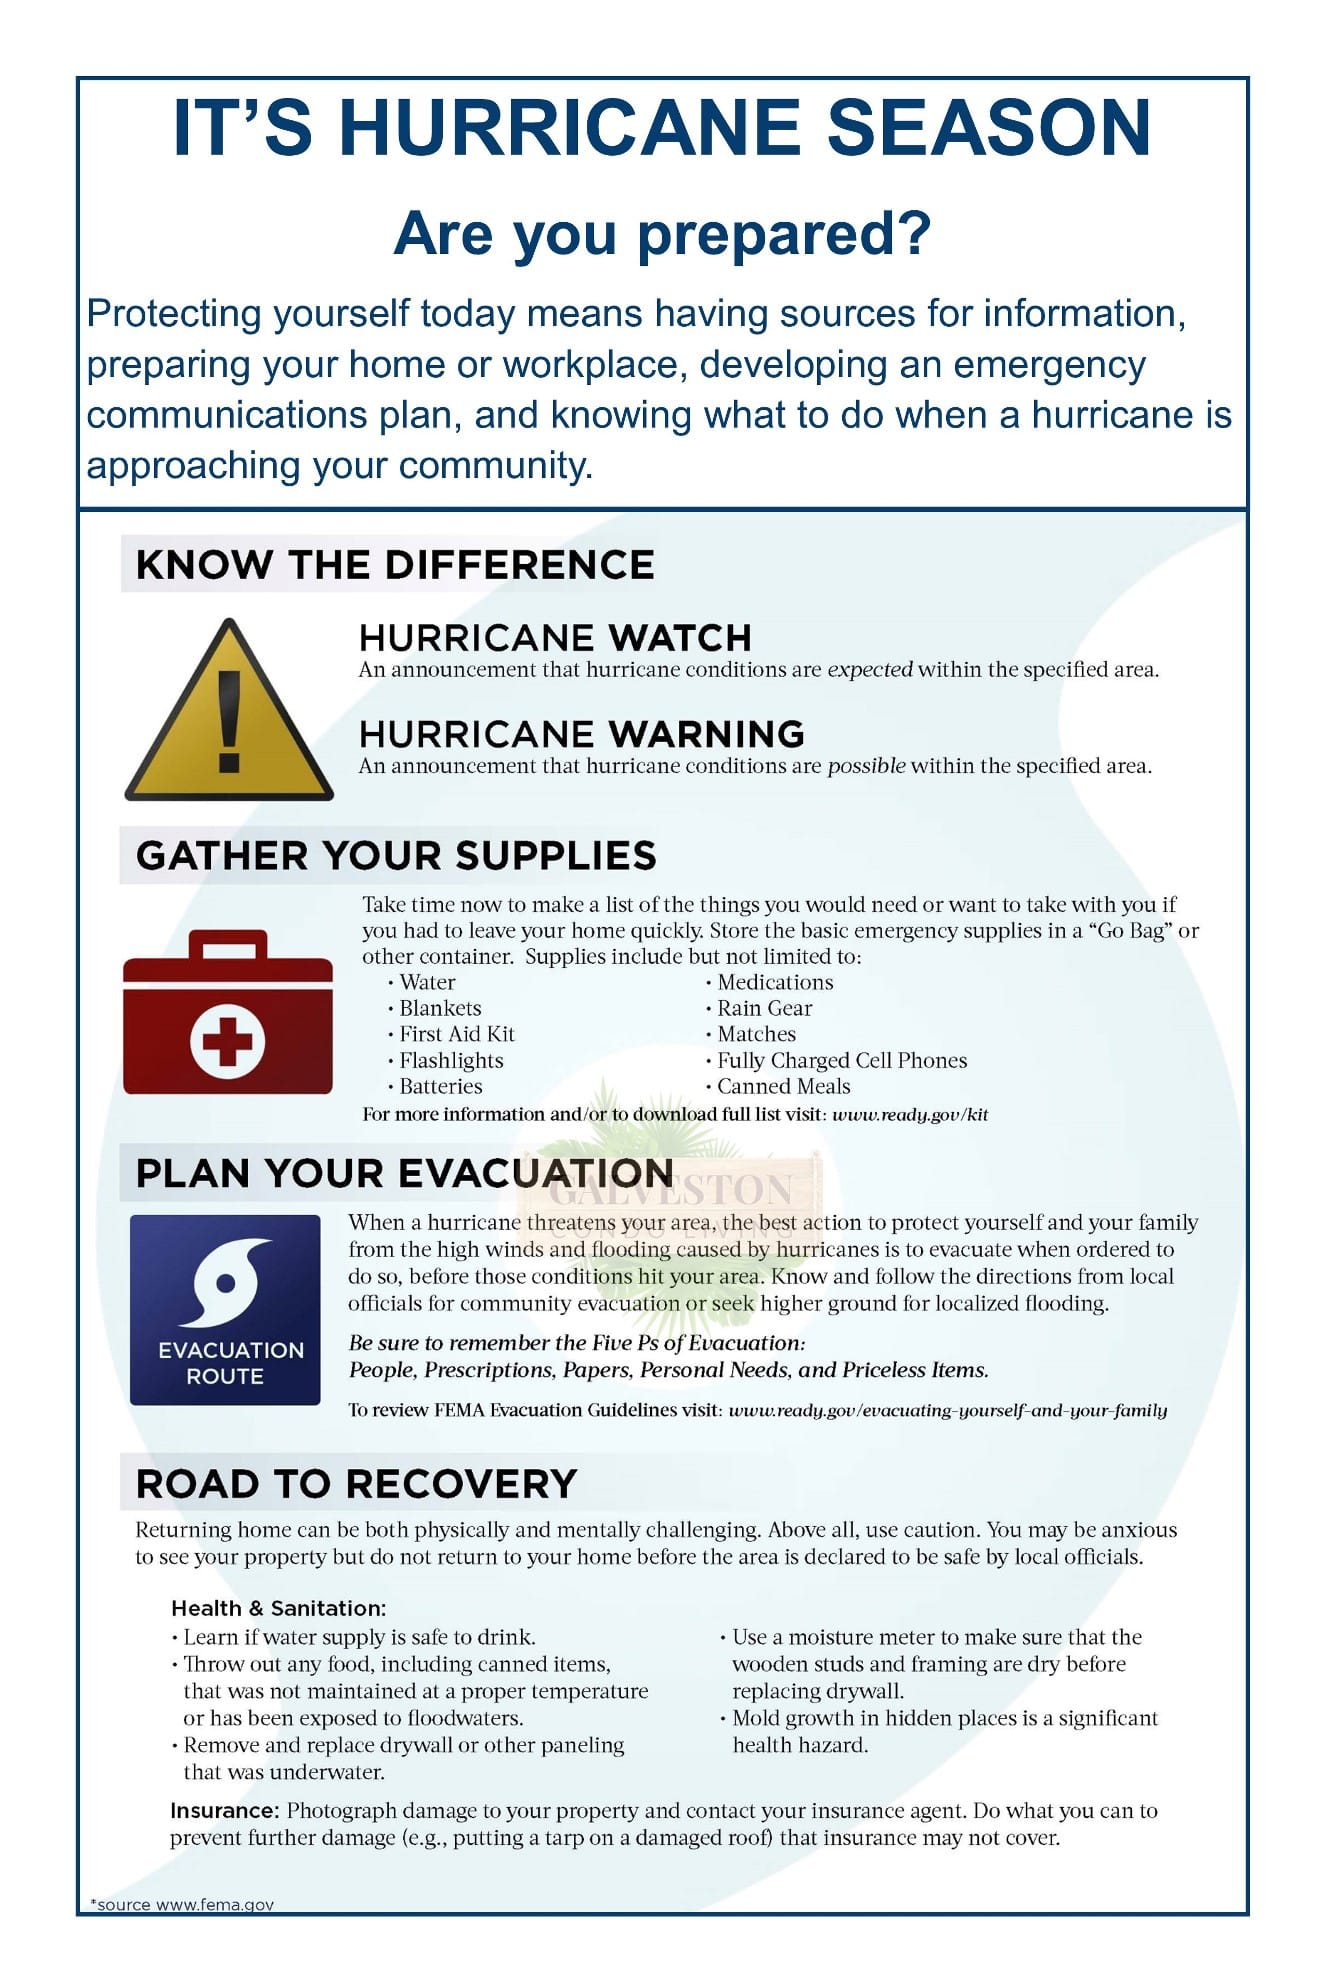 Hurricane preparedness tips